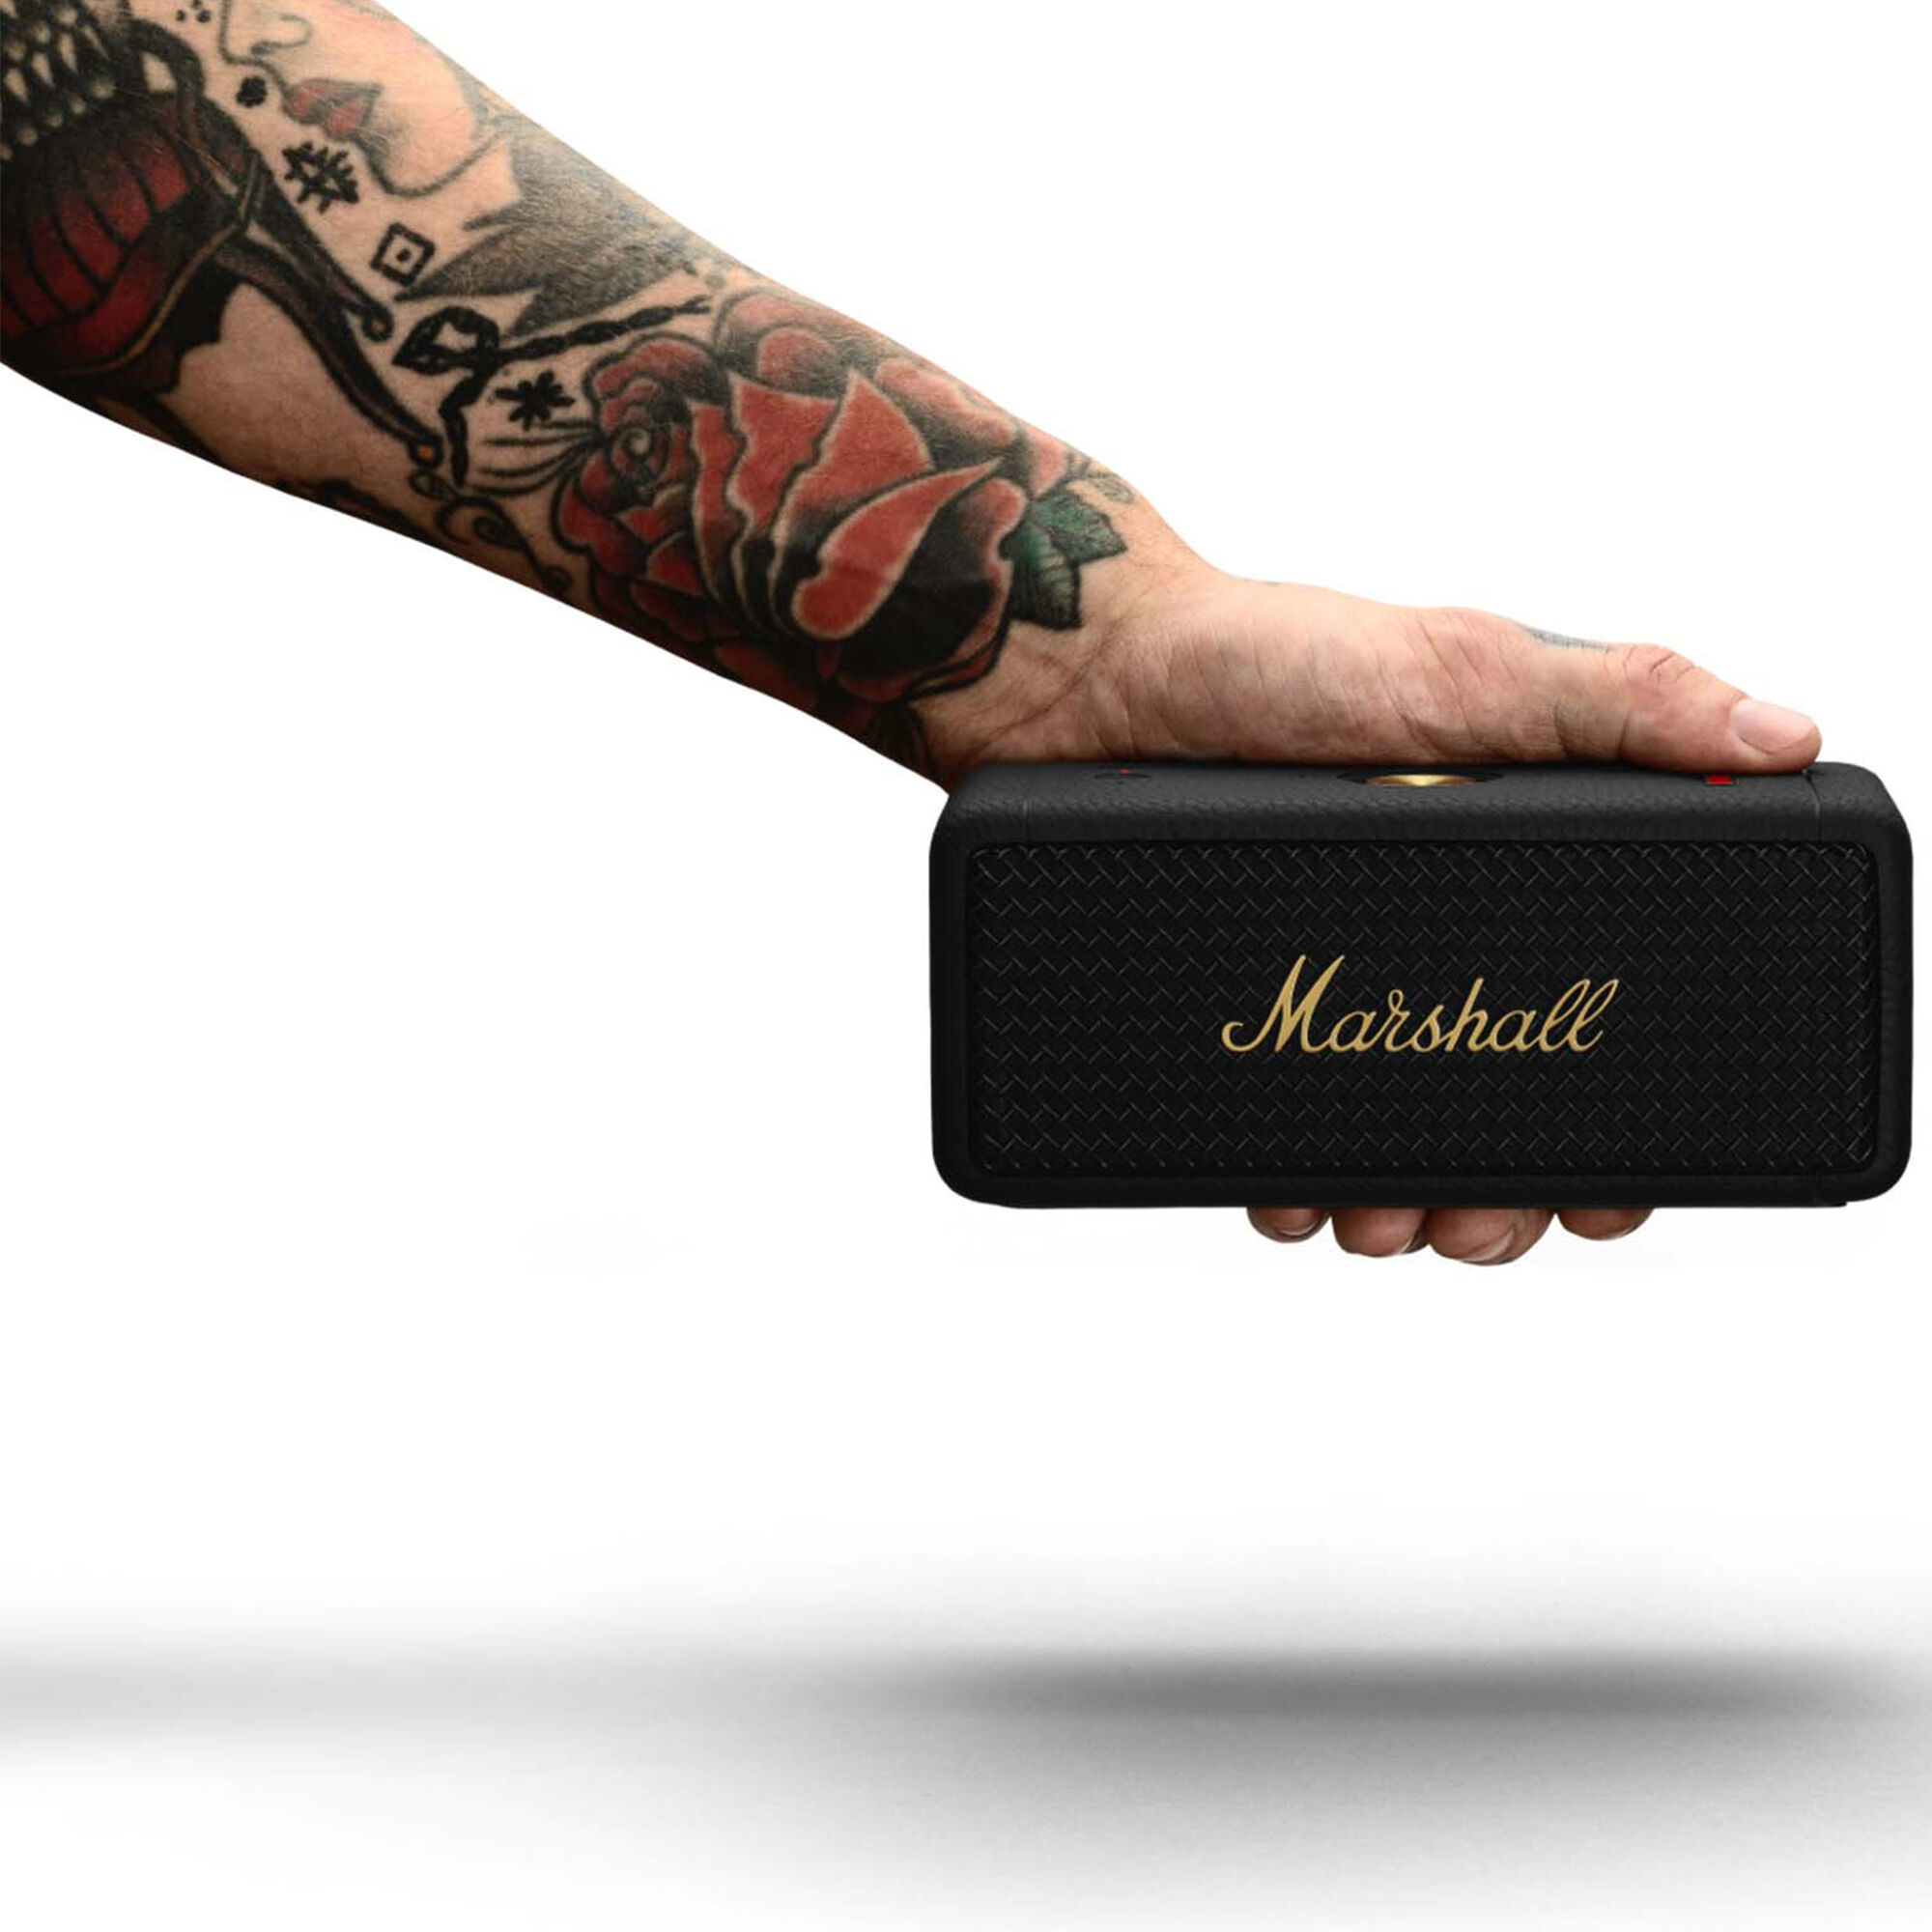 Marshall Emberton II Bluetooth Speaker - Black | P.C. Richard & Son